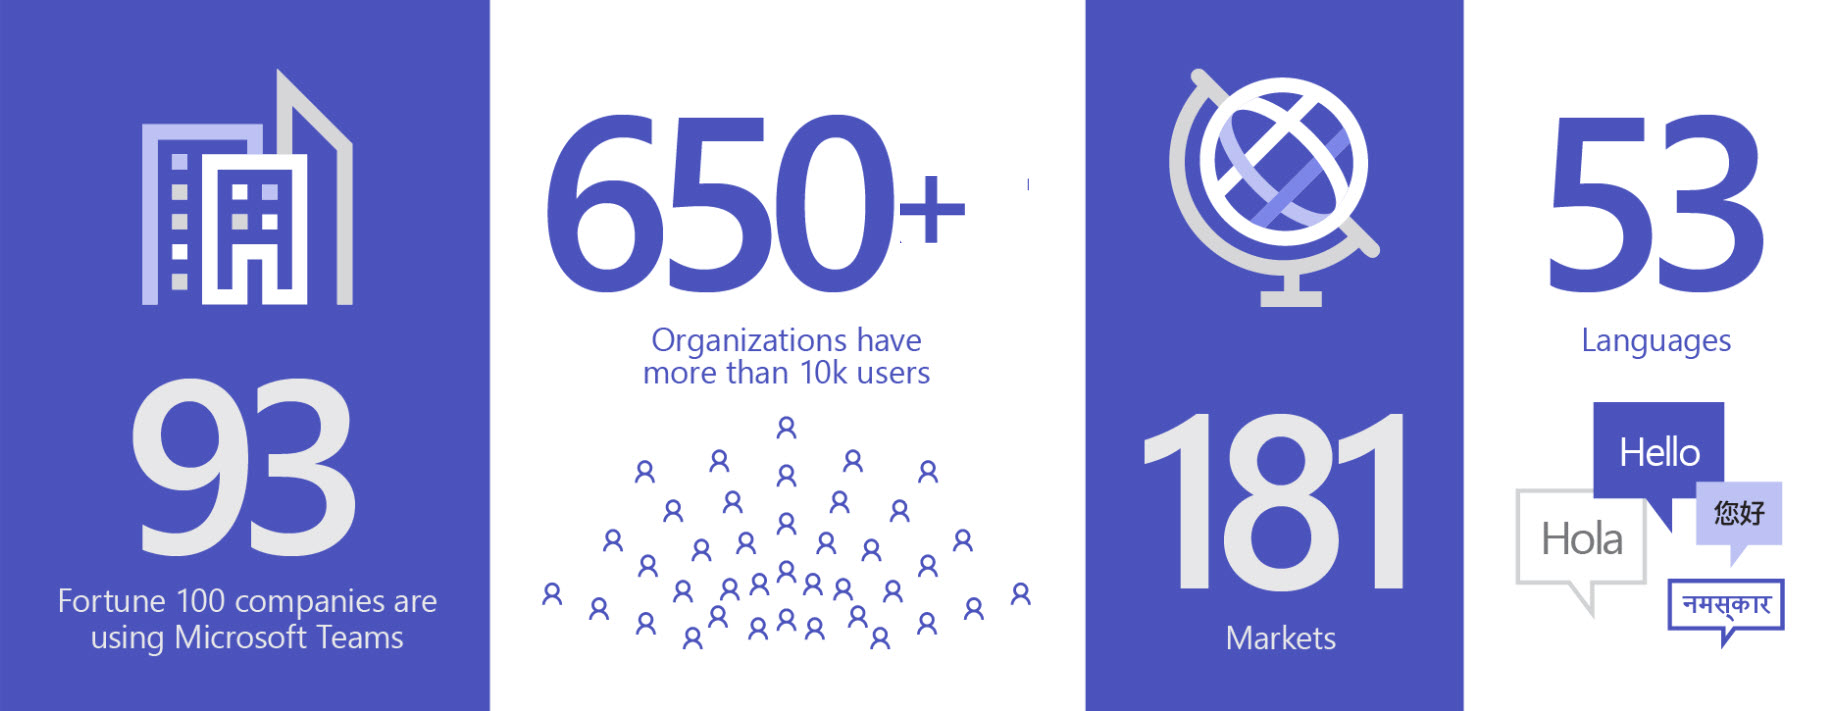 Imaginea prezintă 93 de organizații care utilizează Teams, peste 650 de organizații au mai bine de 10.000 de utilizatori, în 181 de piețe și în 53 de limbi.